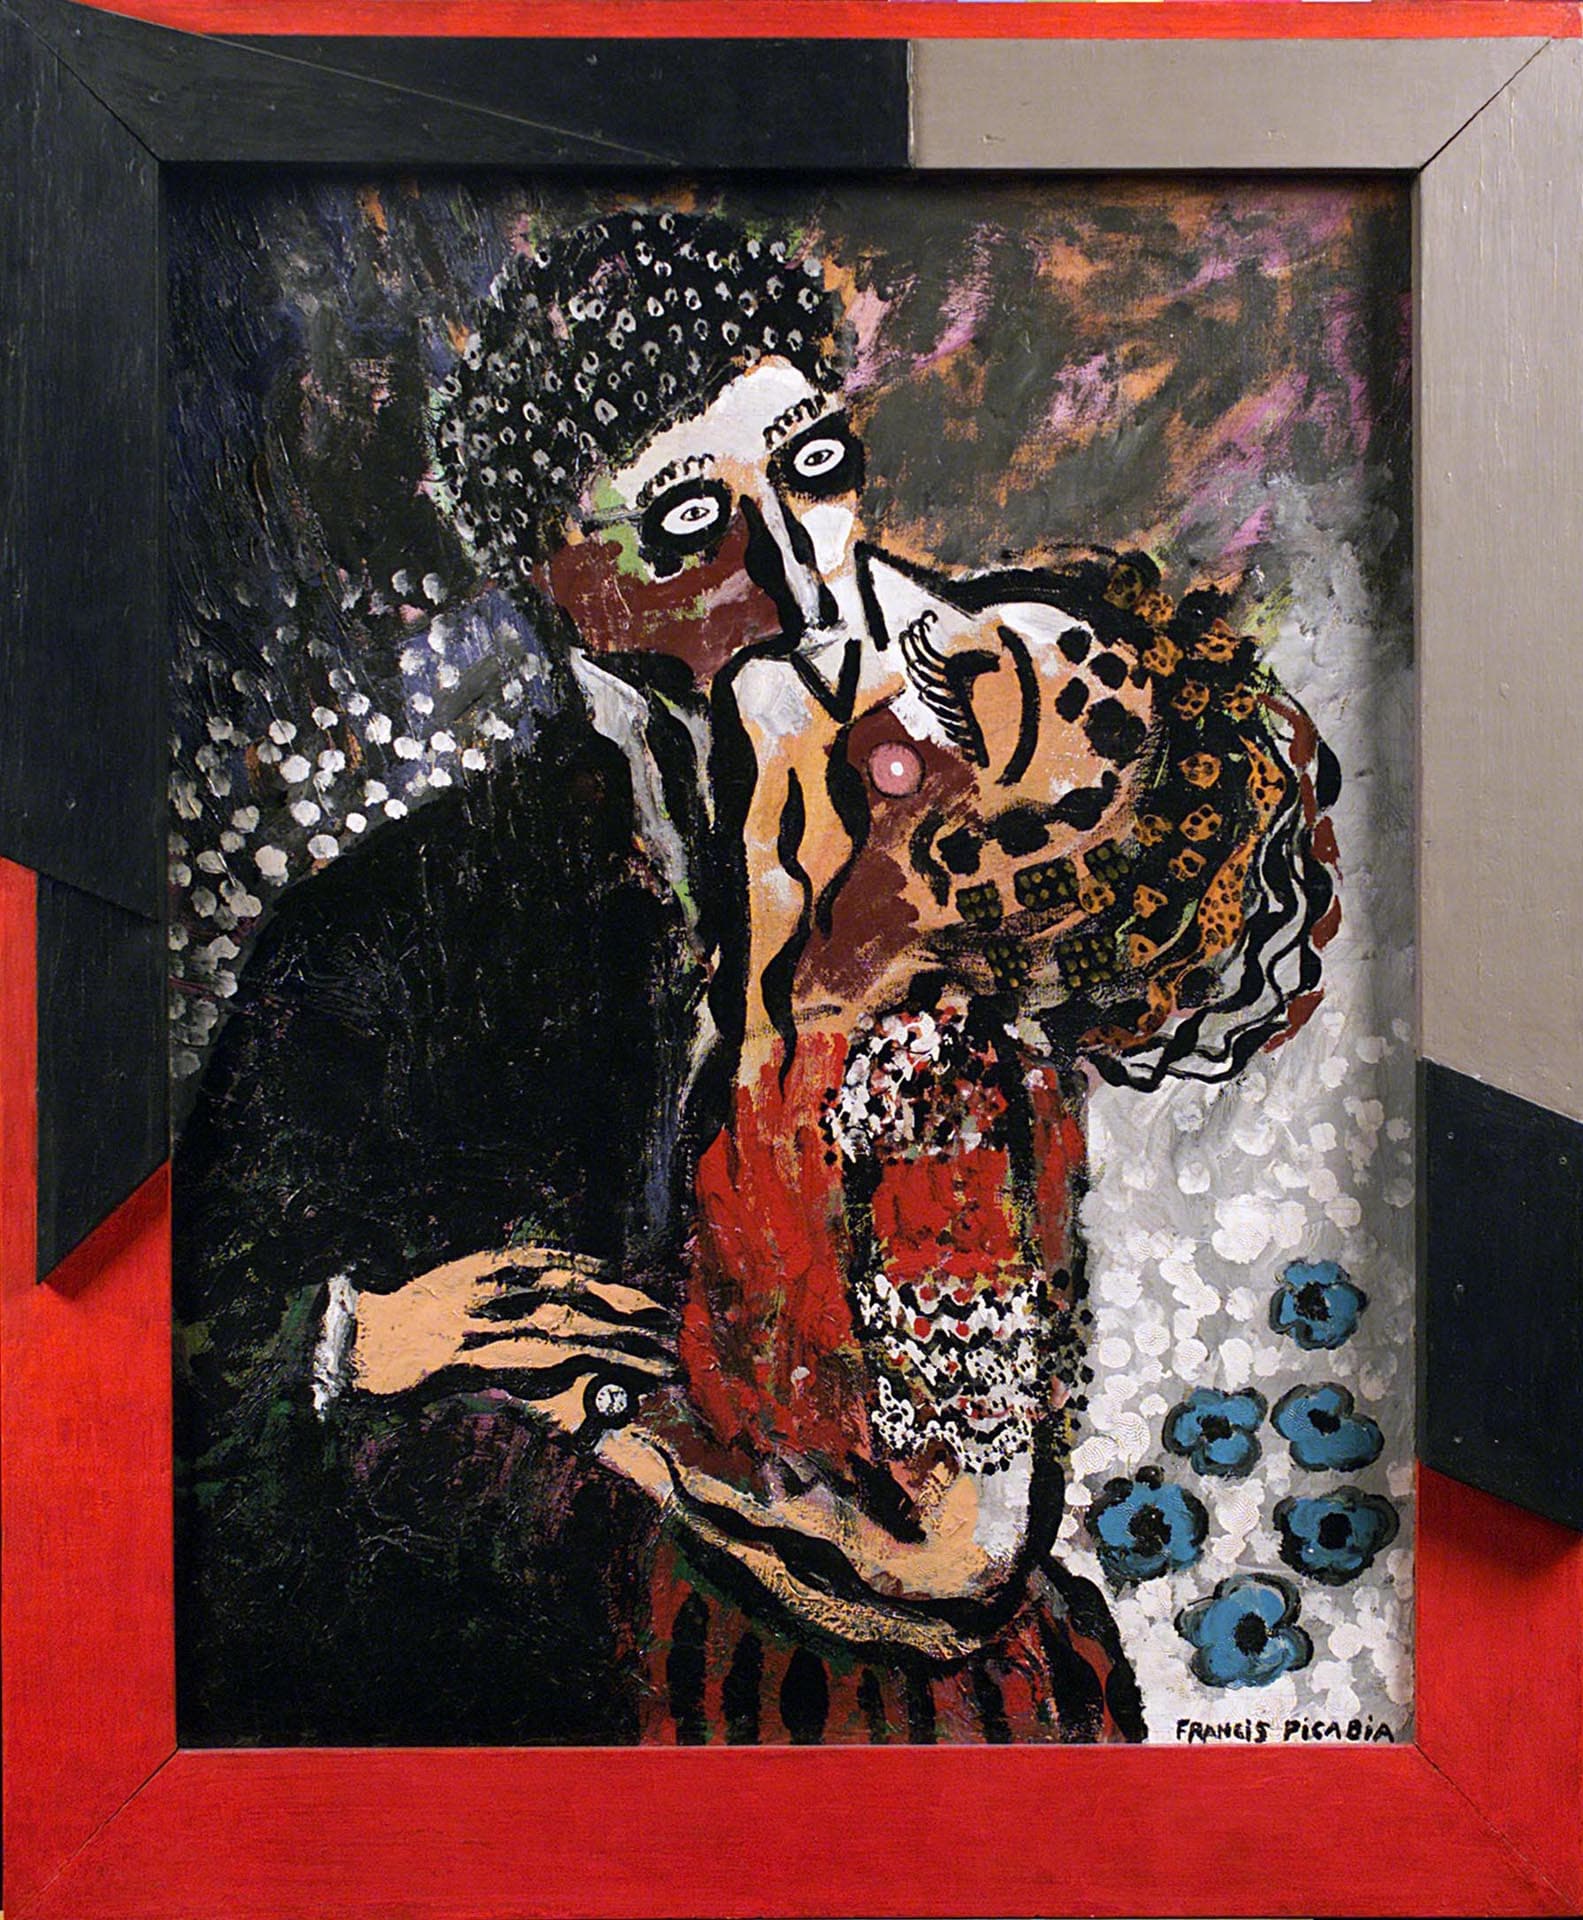 Francis Picabia - Le basier - Il bacio - 1925-1926 ca. - Olio su tela - Acquisto della Galleria Notizie, Torino, 1969